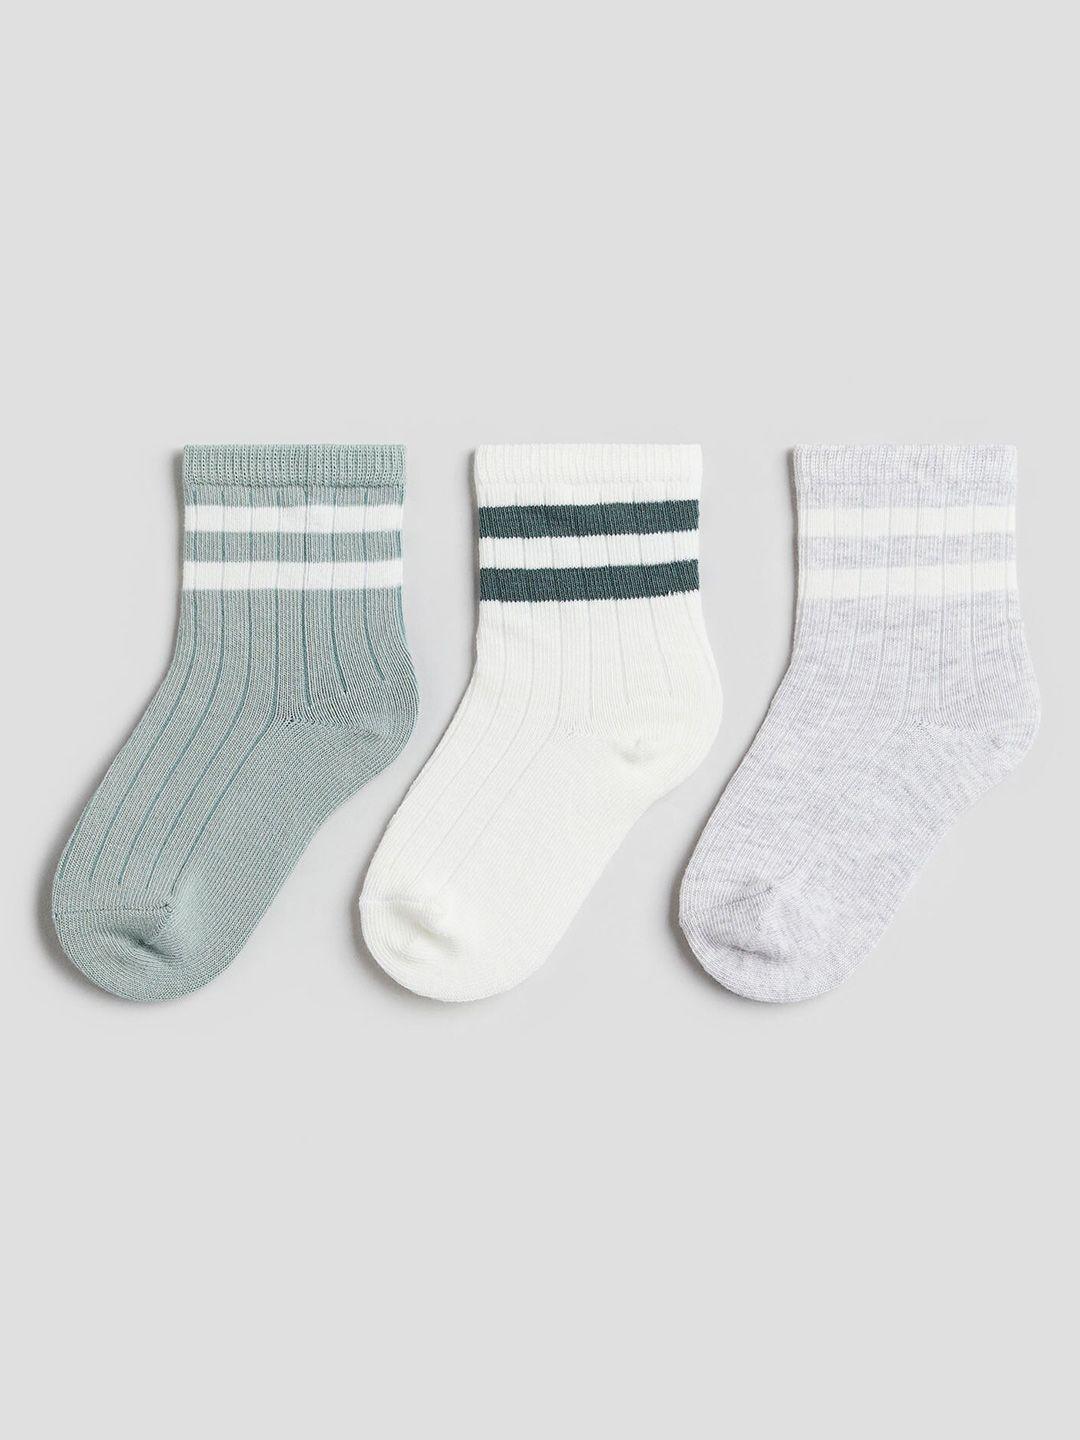 h&m boys pack of 3 patterned ankle length socks